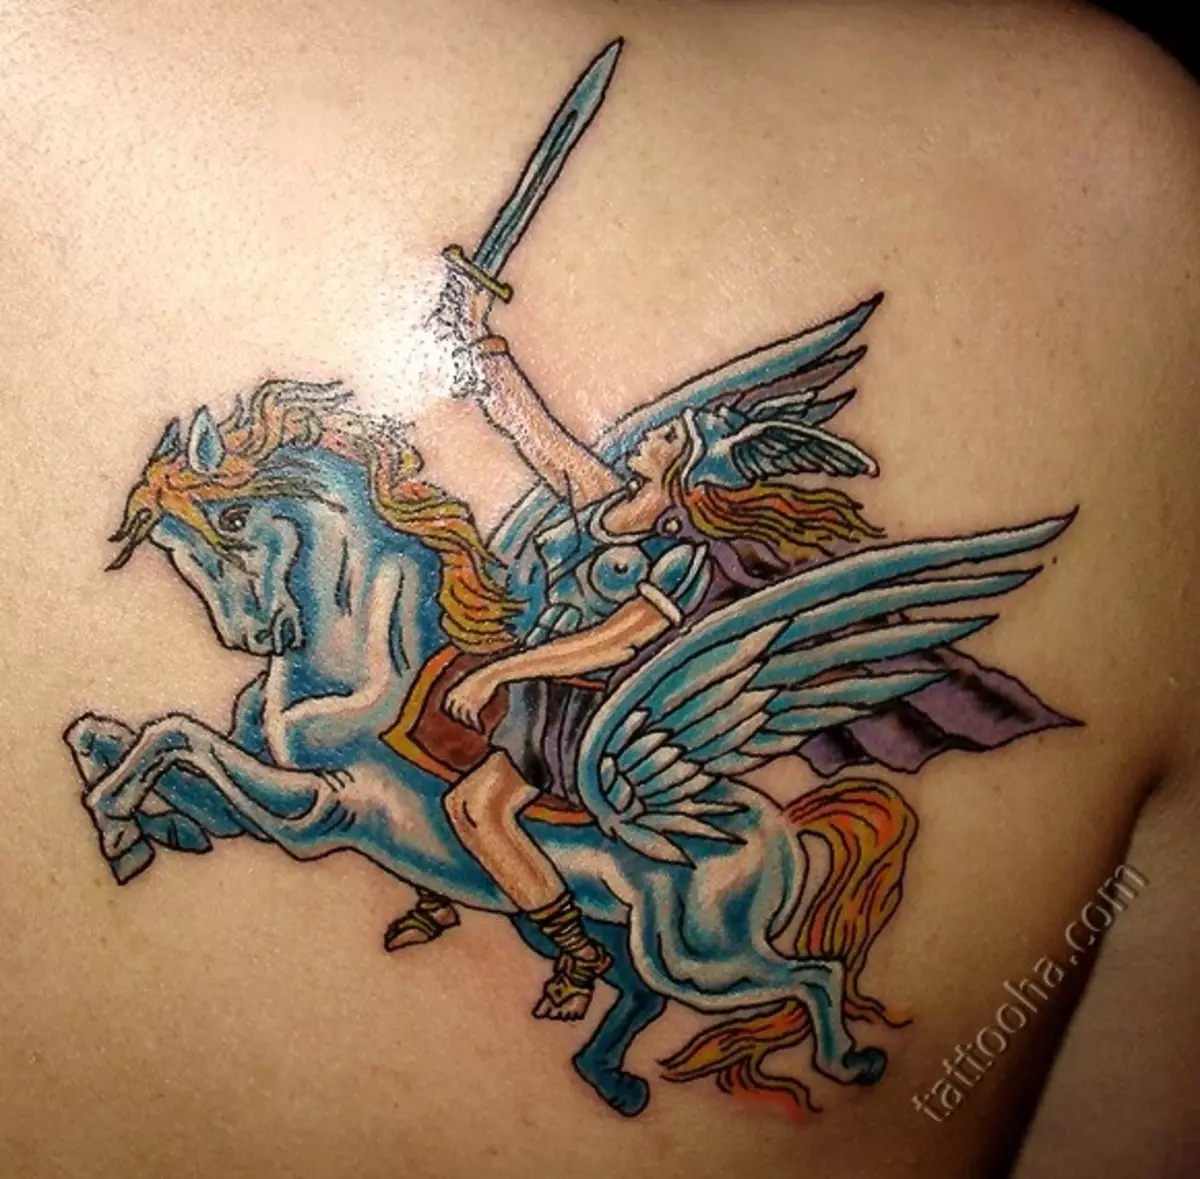 पेगासस टॅटू: पुरुष आणि मुलींसाठी टॅटूचे मूल्य, मागील बाजूस आणि इतर भागात पंख असलेल्या घोडाच्या रूपात घोडाचे स्केच 14193_22